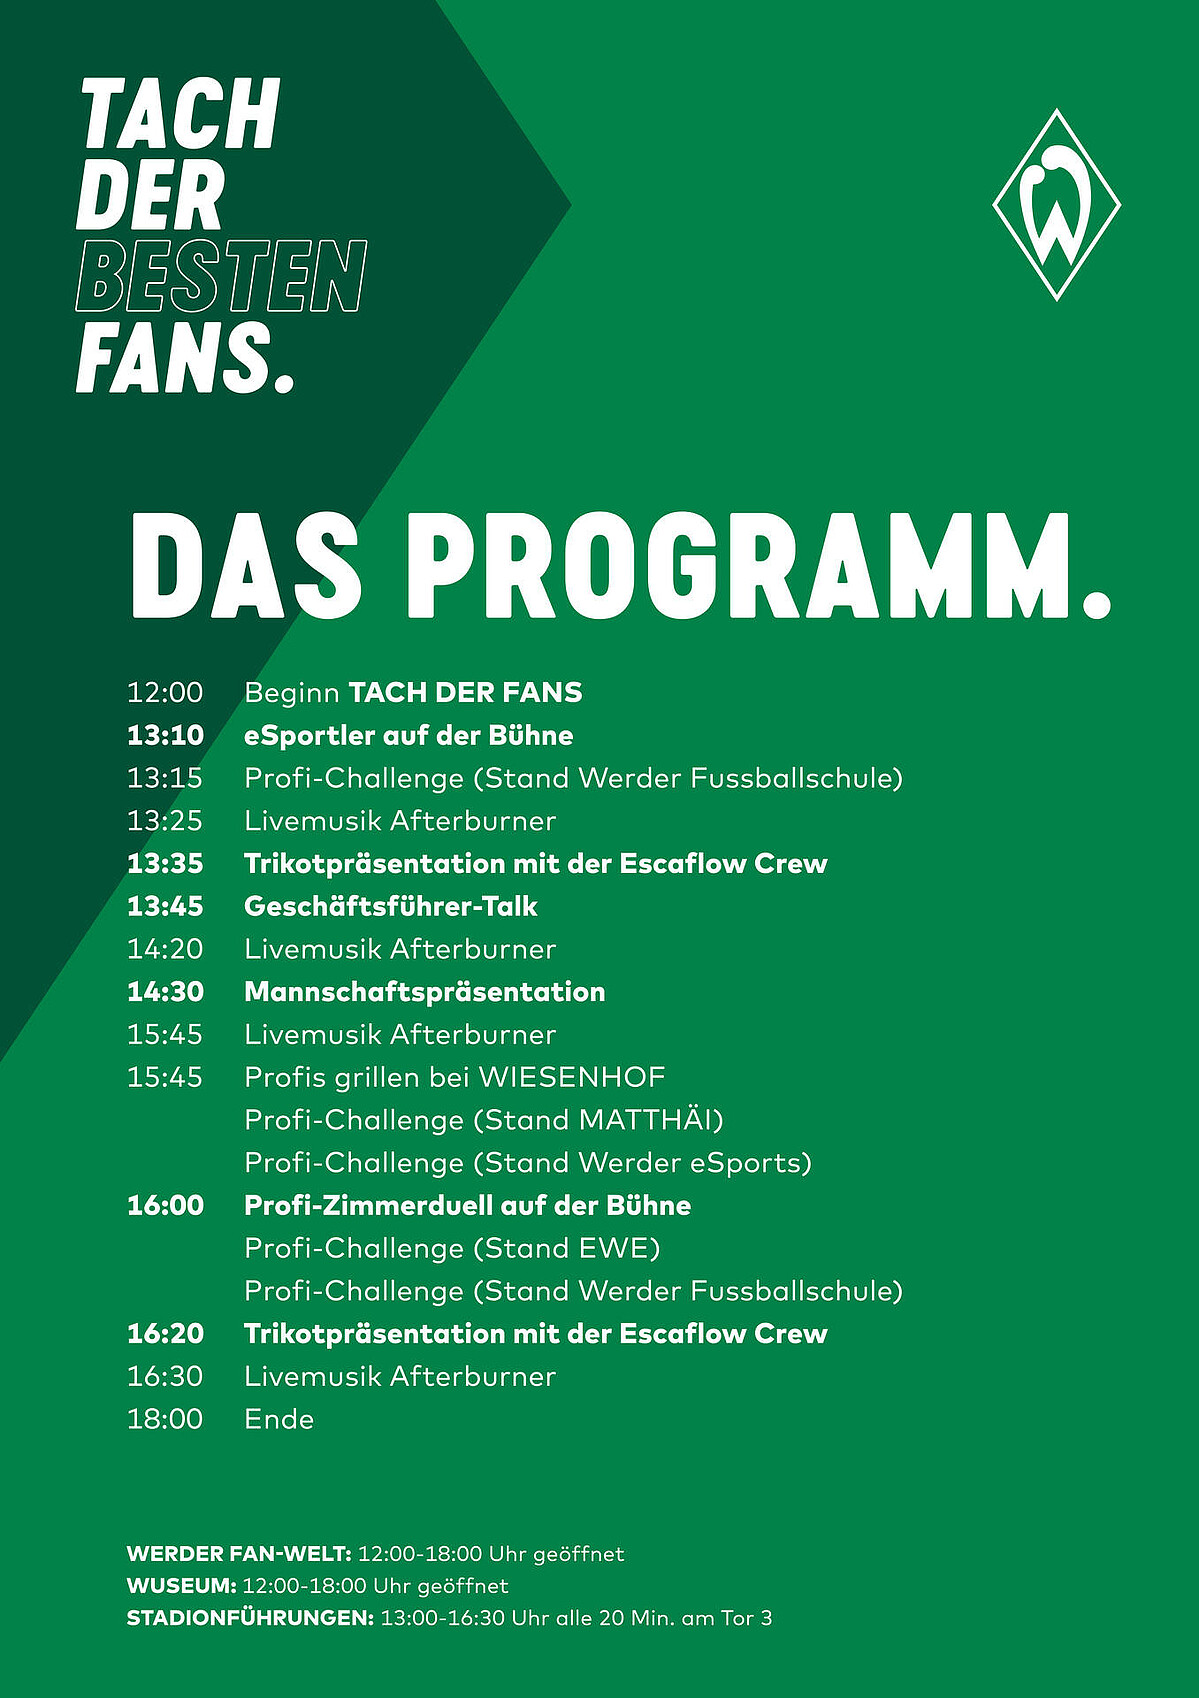 Das Programm des Werder Tach der Fans 2022.